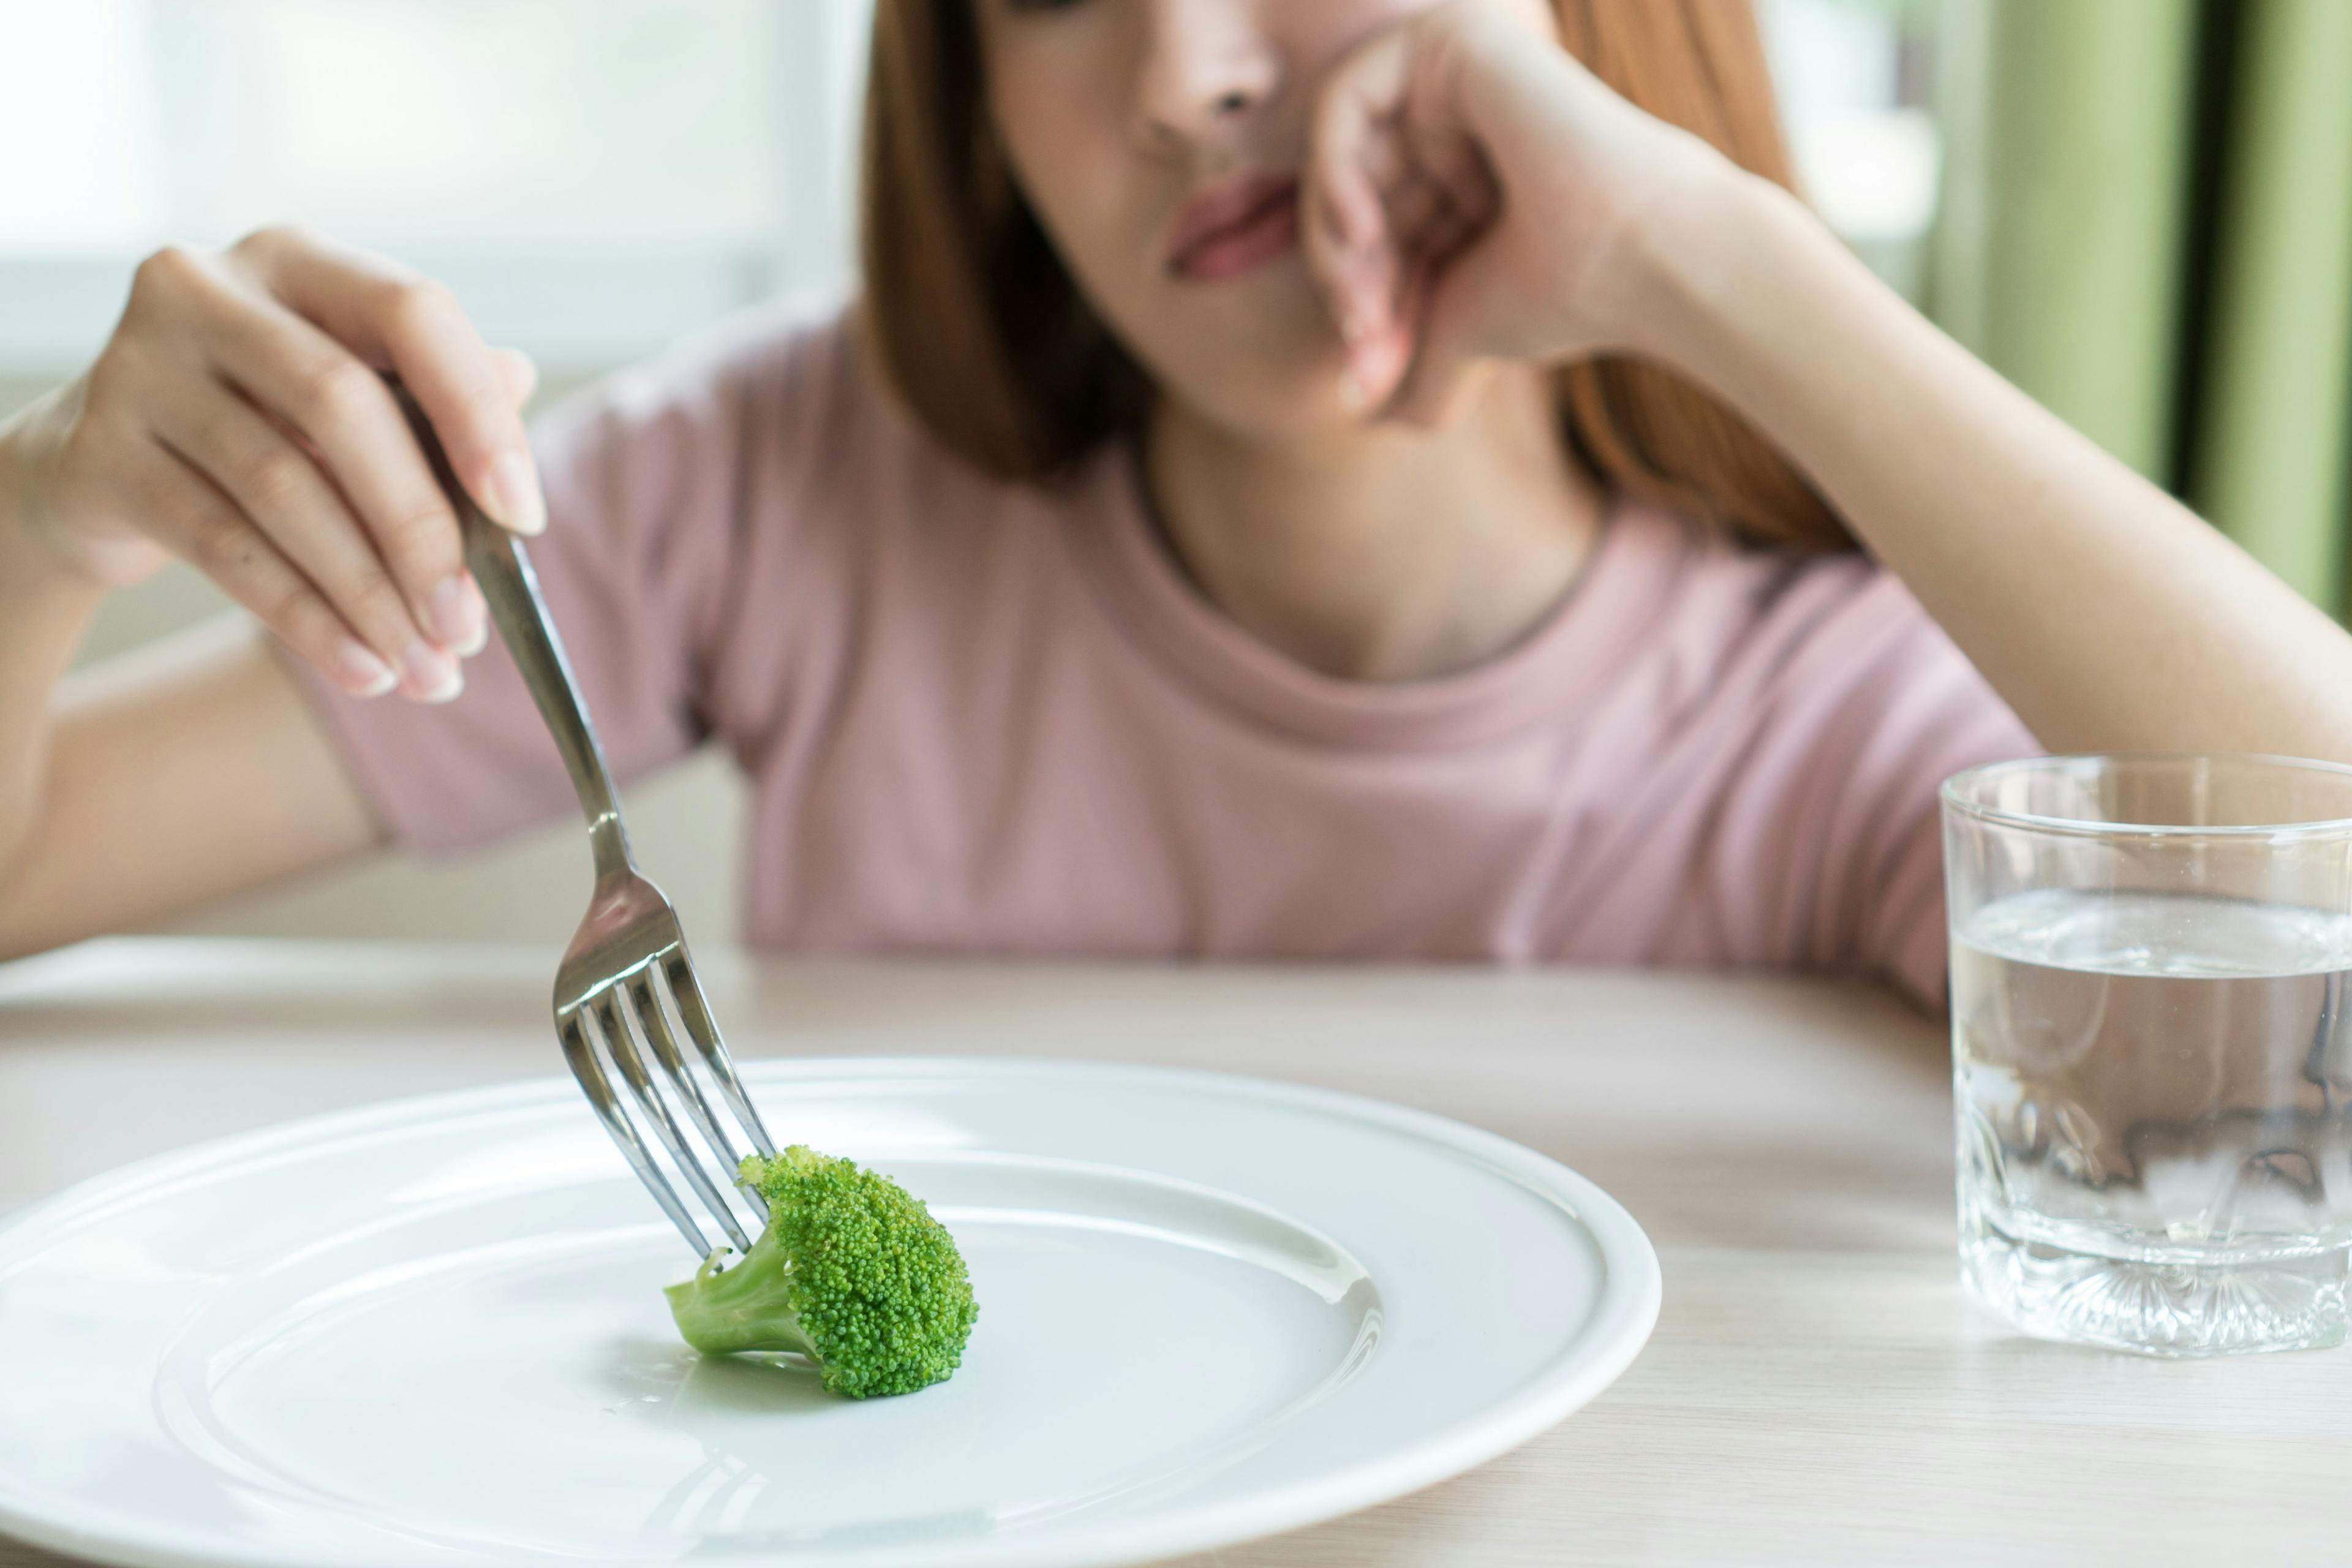 Pennsylvania Legislators Push to Increase Awareness of Eating Disorders in Children